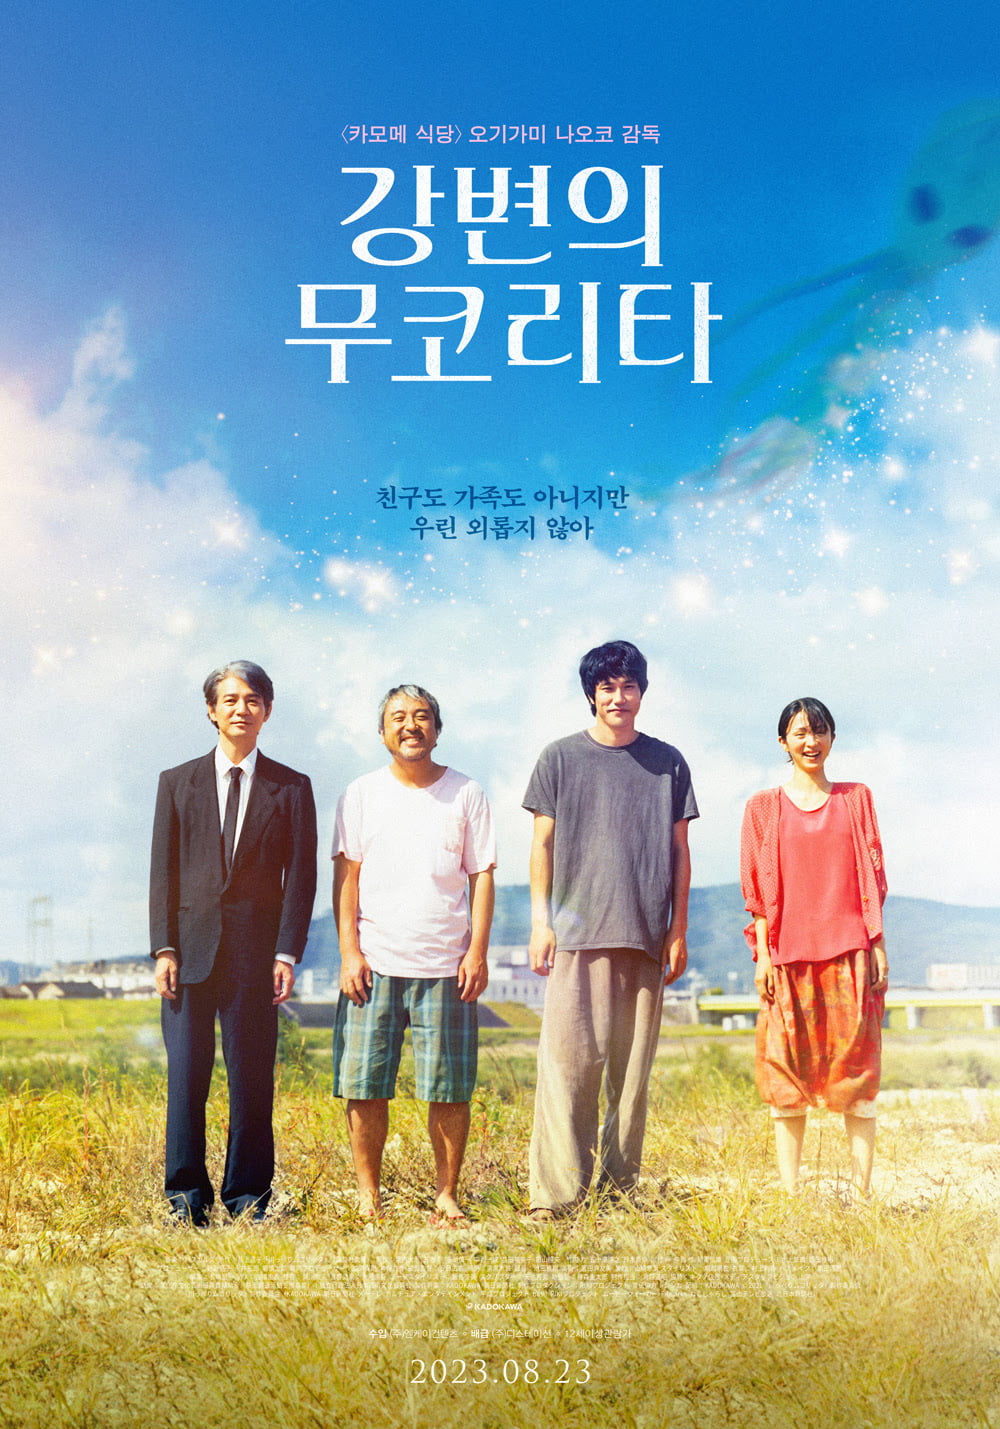 '강변의 무코리타', 오기가미 나오코 특유의 따스한 행복…8월 23일 개봉